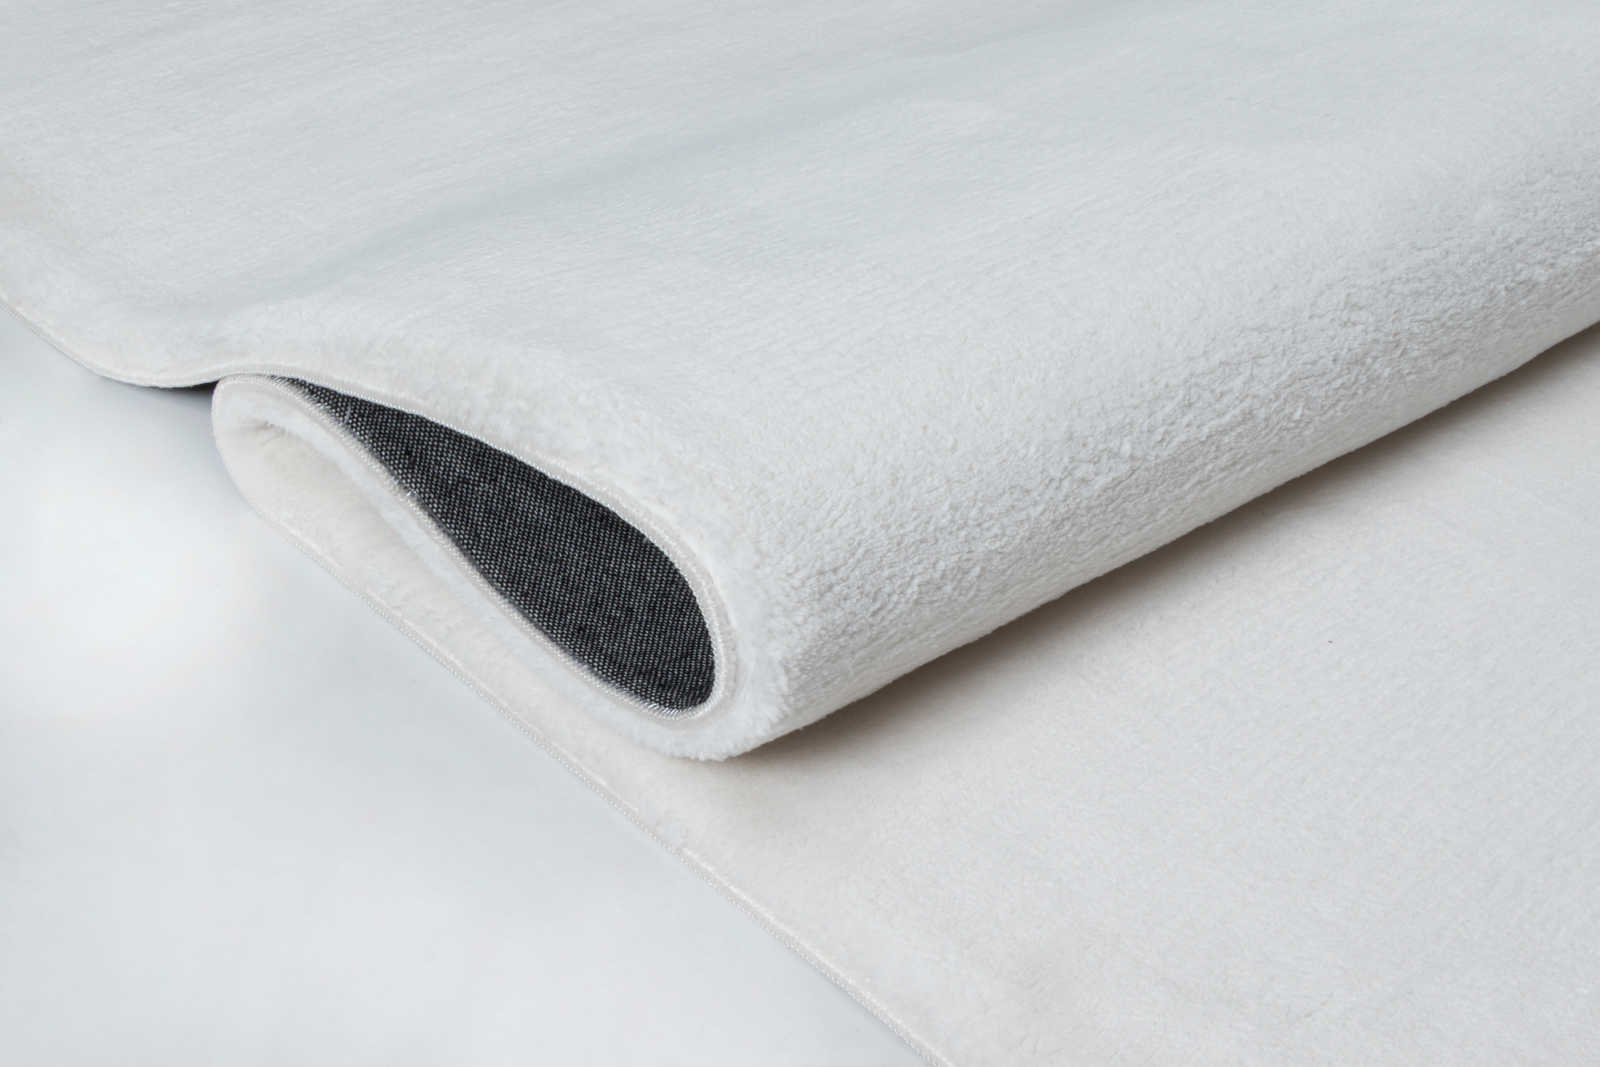             Flauschiger Hochflor Teppich in angenehmen Creme – 150 x 80 cm
        